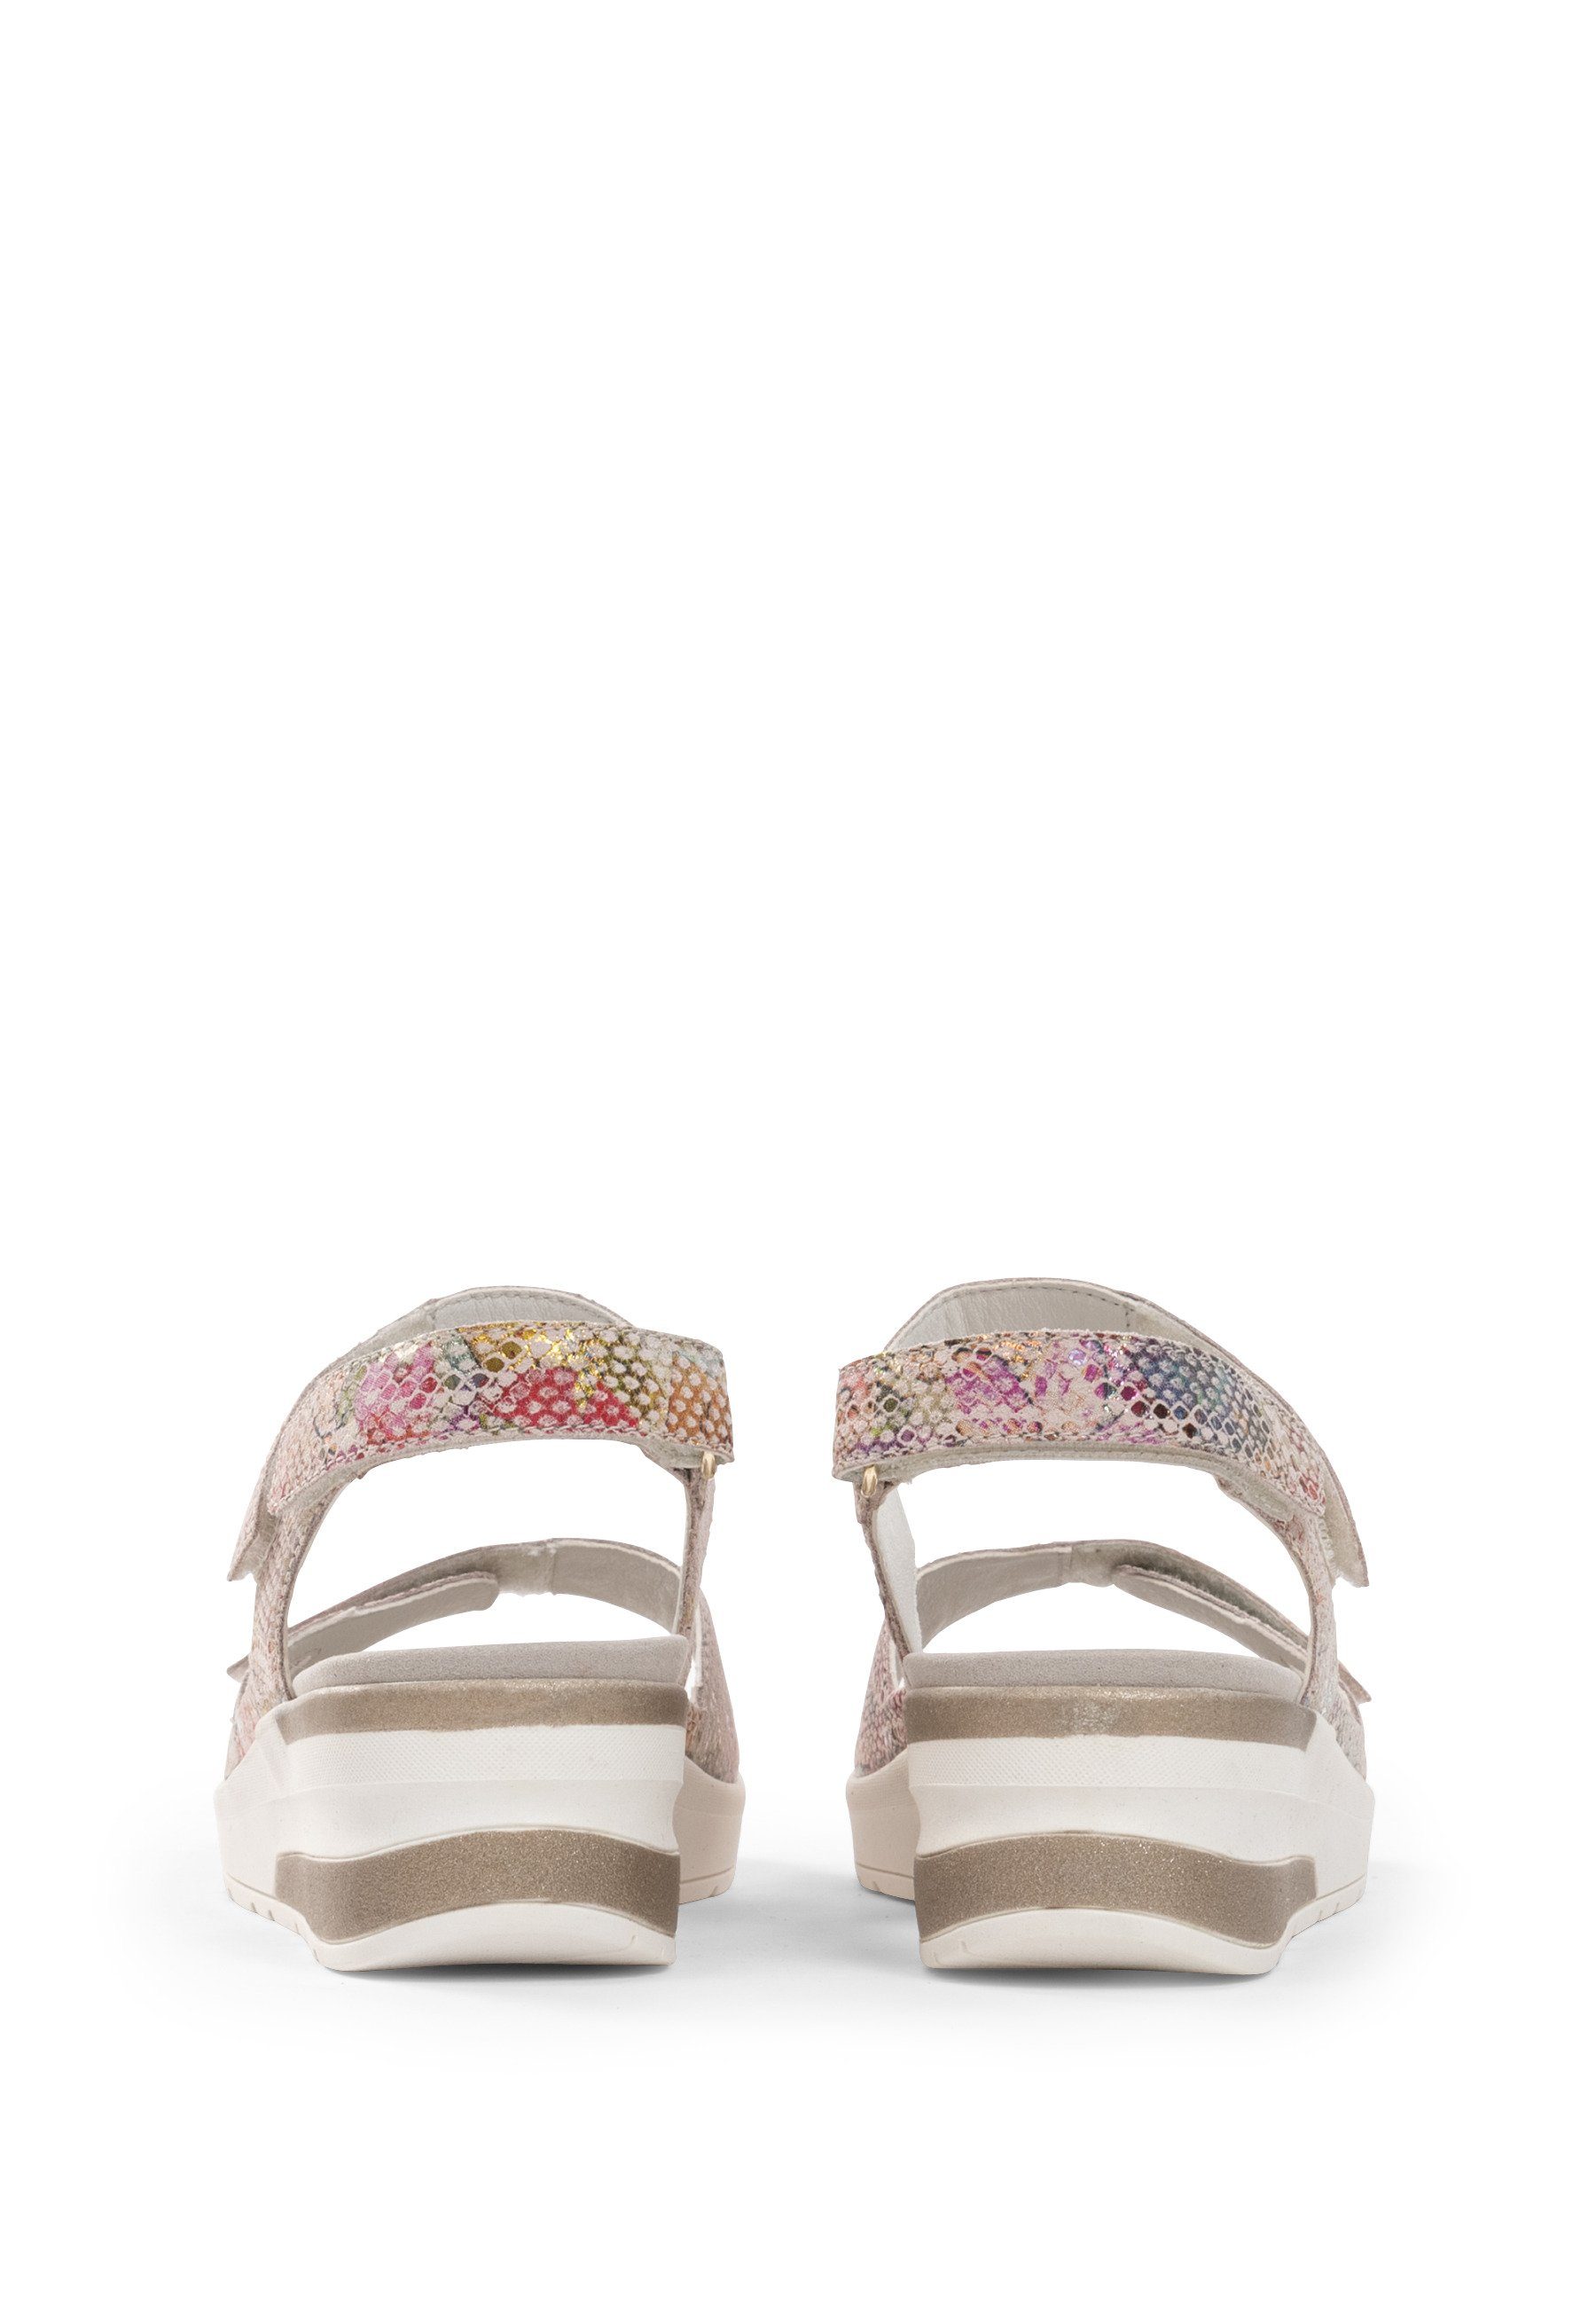 vitaform Damenschuhe Sandalette Sandalette Nappaleder rosa/floral